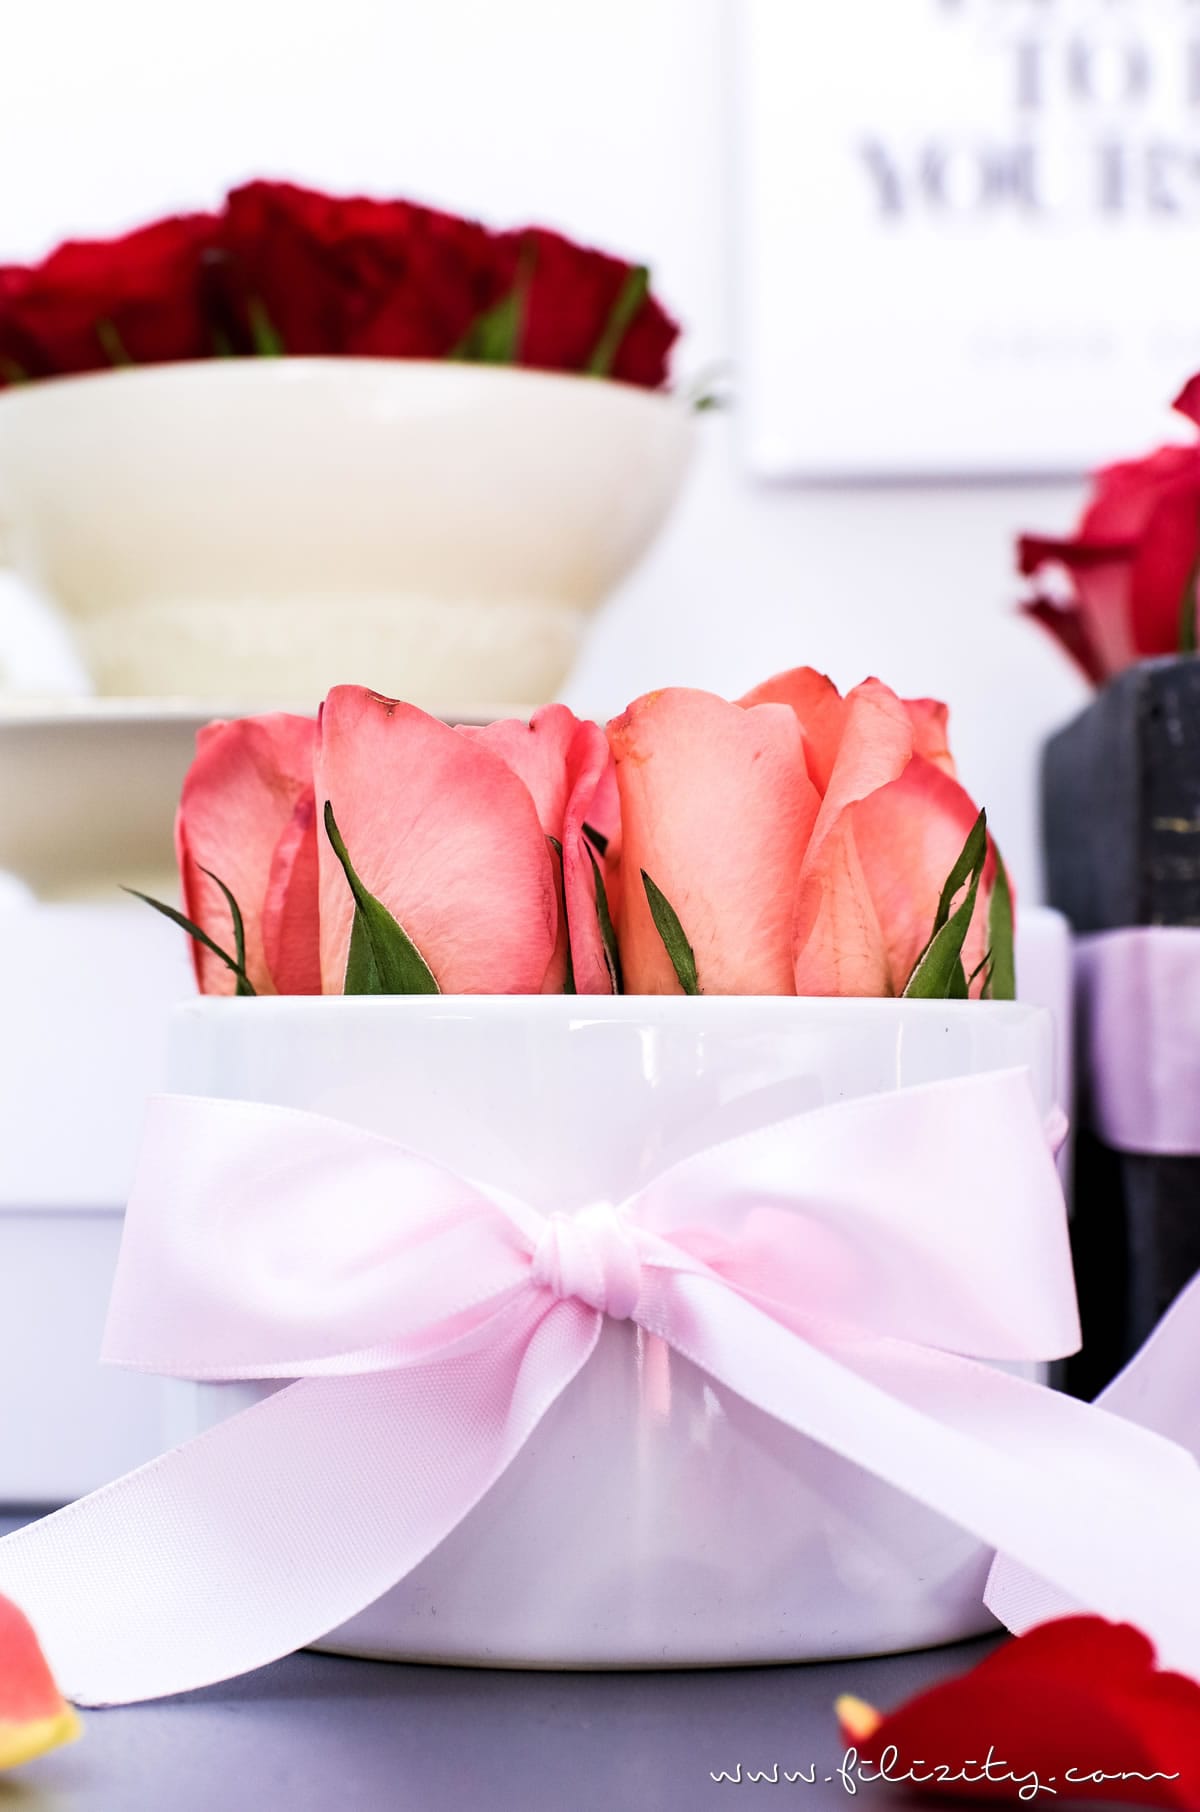 3x Flowerbox selber machen - DIY Geschenkidee für Valentinstag, Muttertag, Geburtstag usw. | DIY Deko mit Blumen | Filizity.com | DIY-Blog aus dem Rheinland #valentinstag #muttertag #geschenkidee #geburtstag #flowerbox